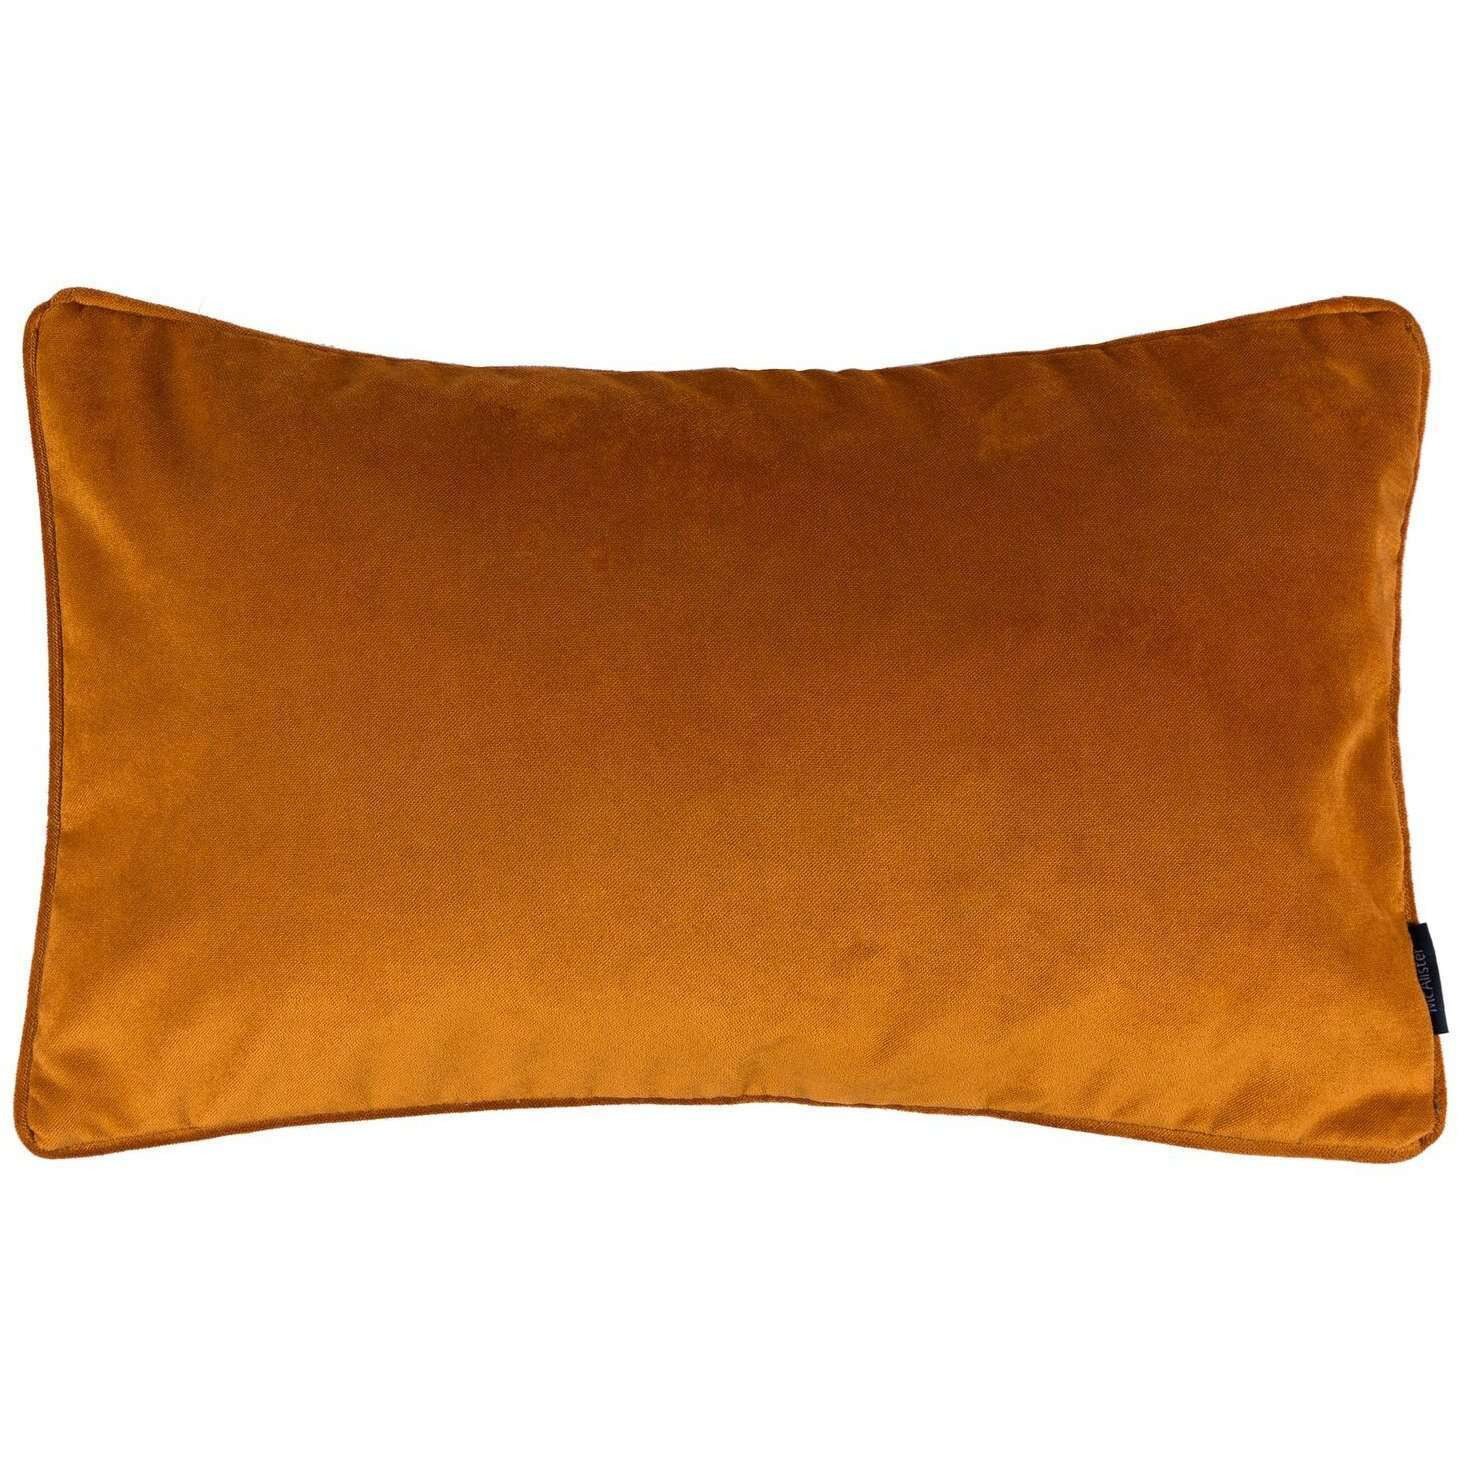 Matt Burnt Orange Velvet Pillow, Cover Only / 50cm x 30cm